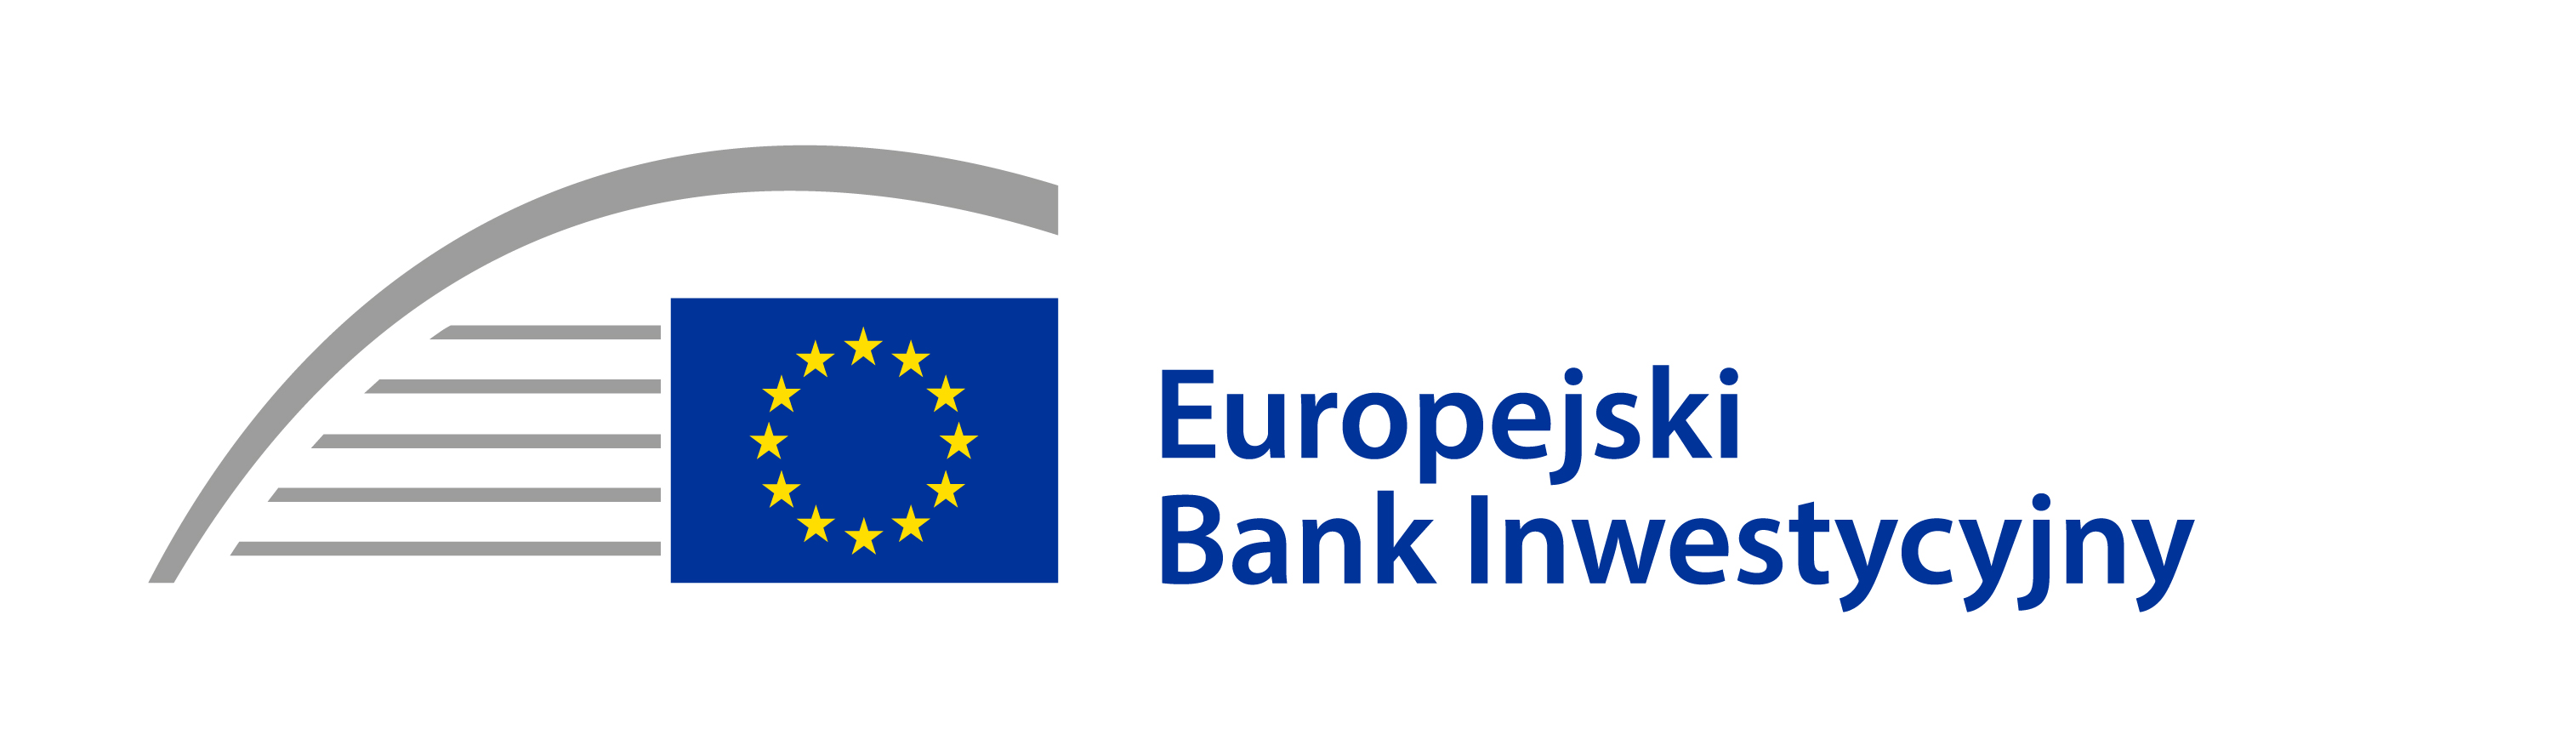 Europejski Bank Inwestycyjny (EBI) 